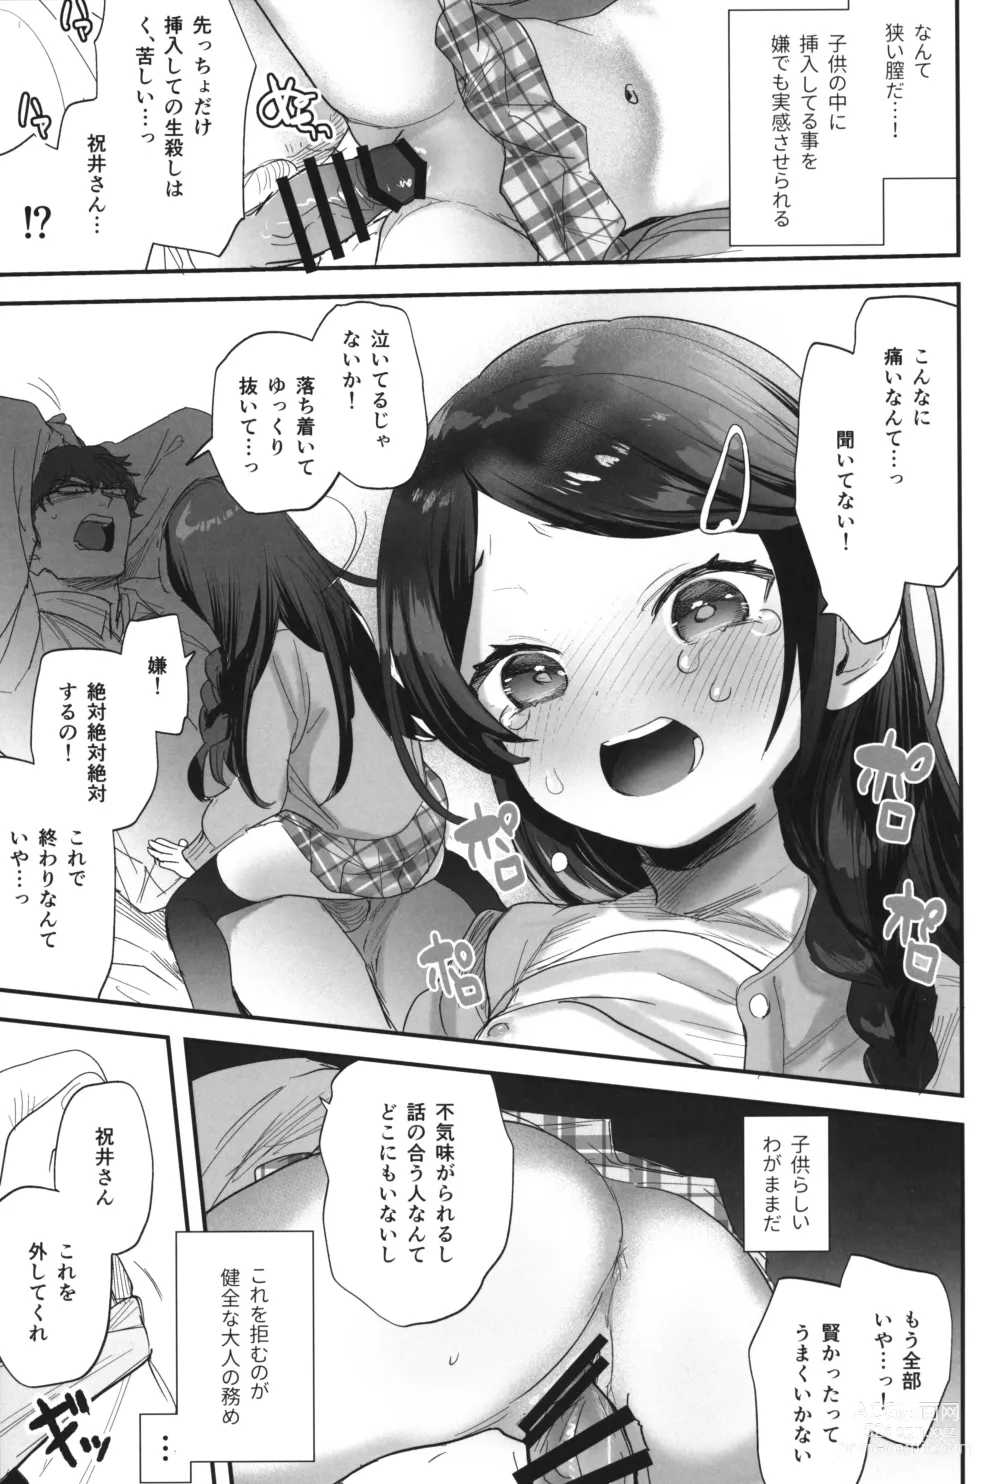 Page 10 of doujinshi Futoukou de Daitensai no Kimi no Ana ga Umaru made